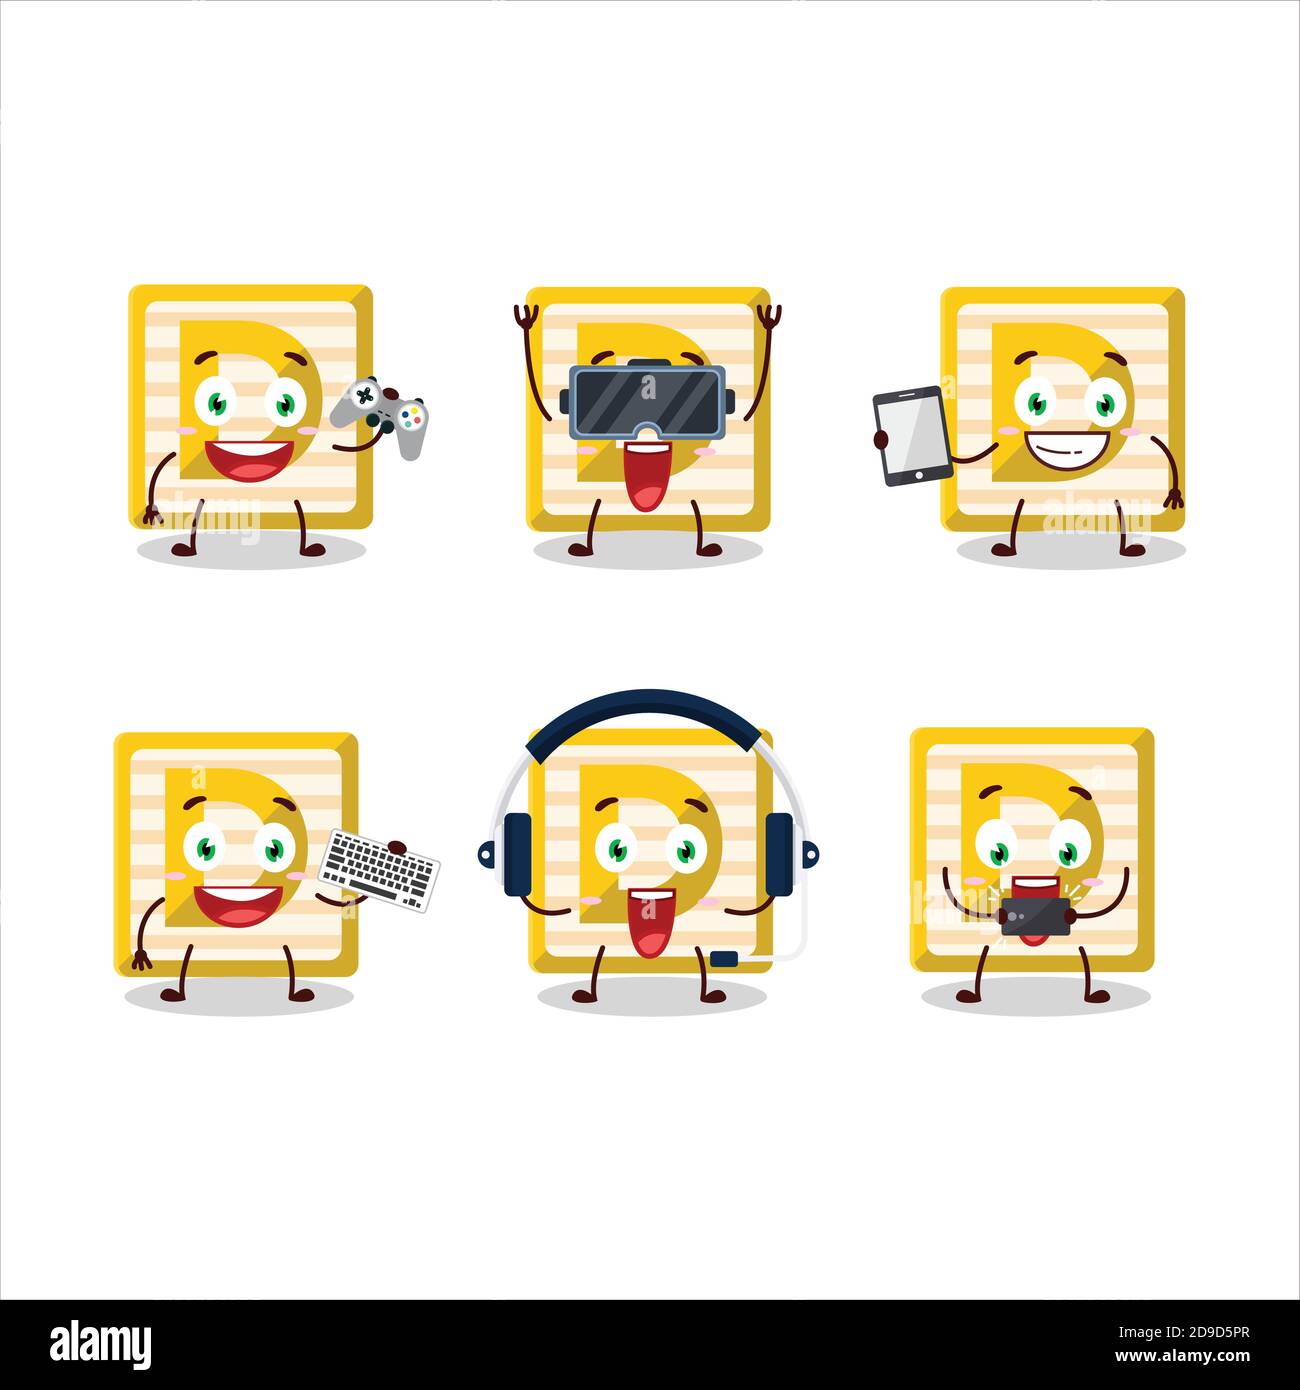 Le personnage de dessin animé du bloc de jouets D joue à des jeux avec divers émoticônes mignons Illustration de Vecteur